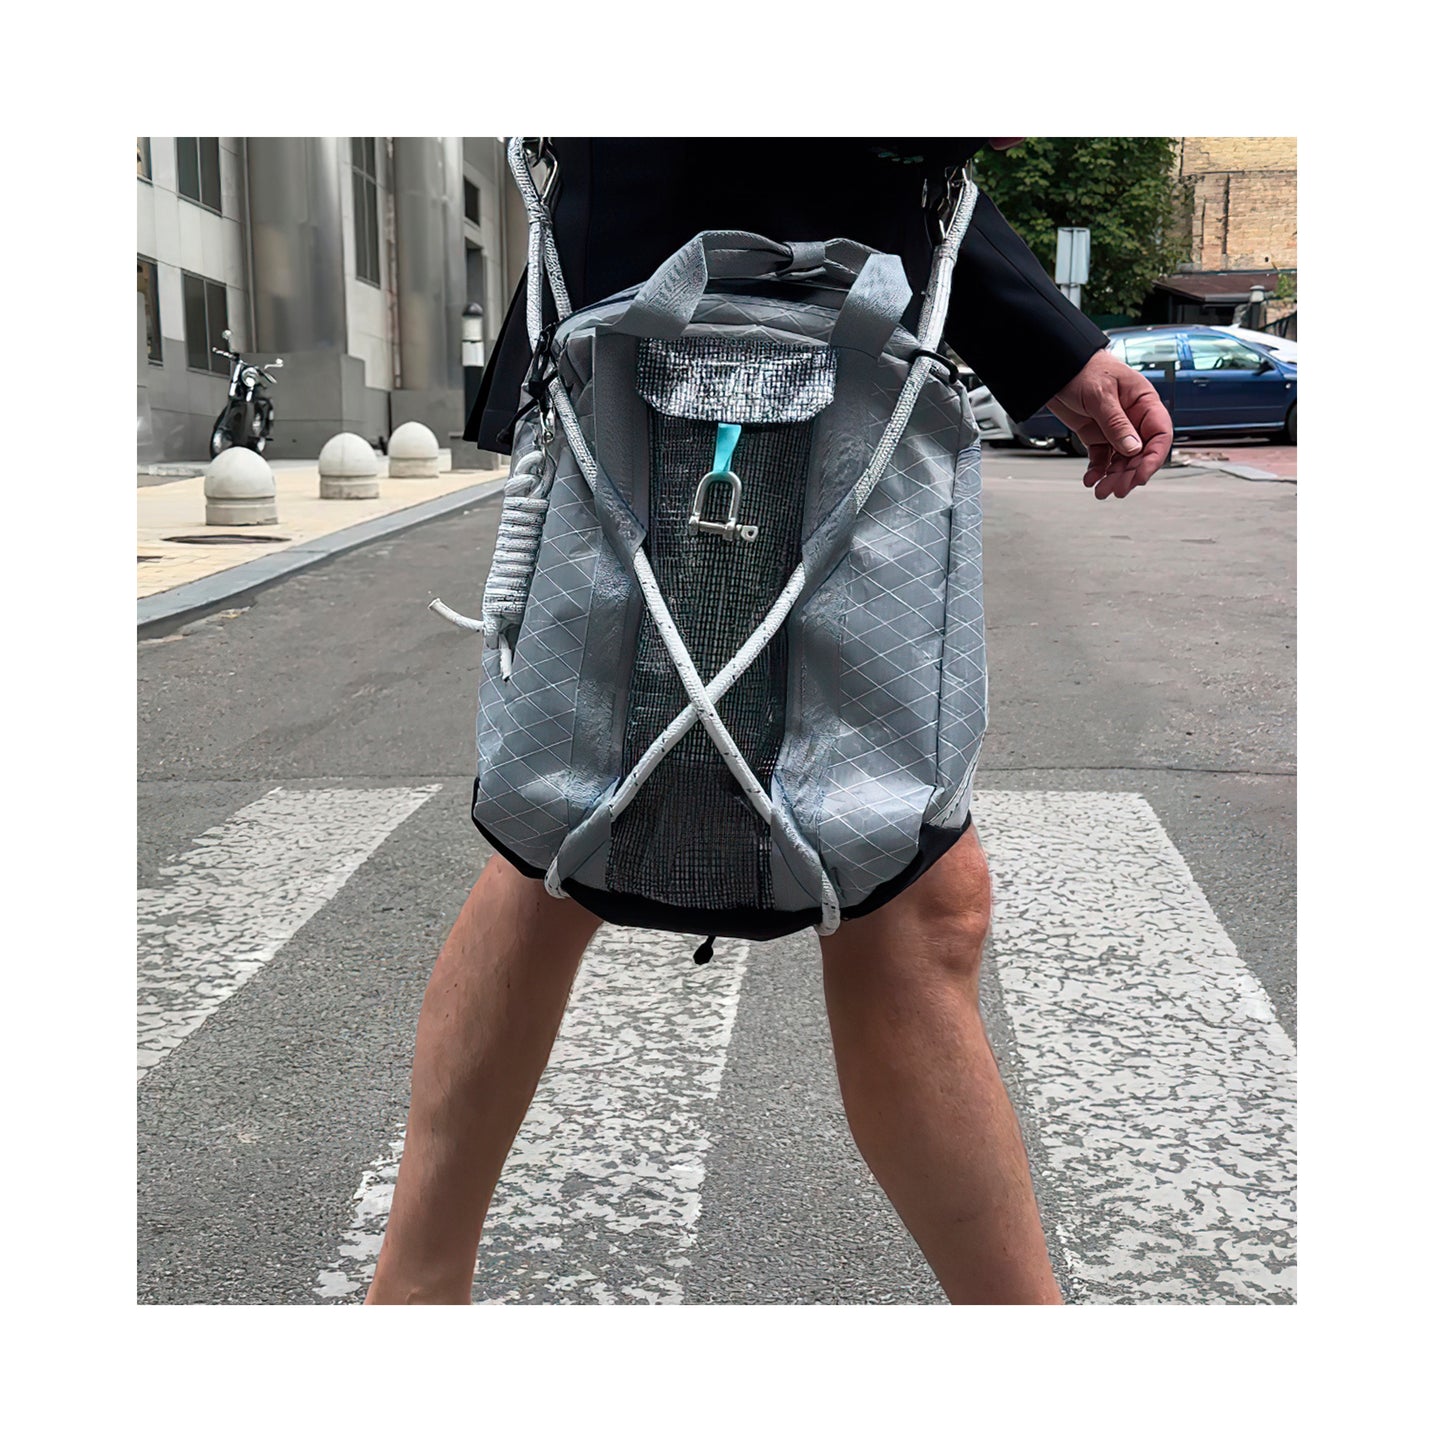 Captain bag (satchels, backpack)